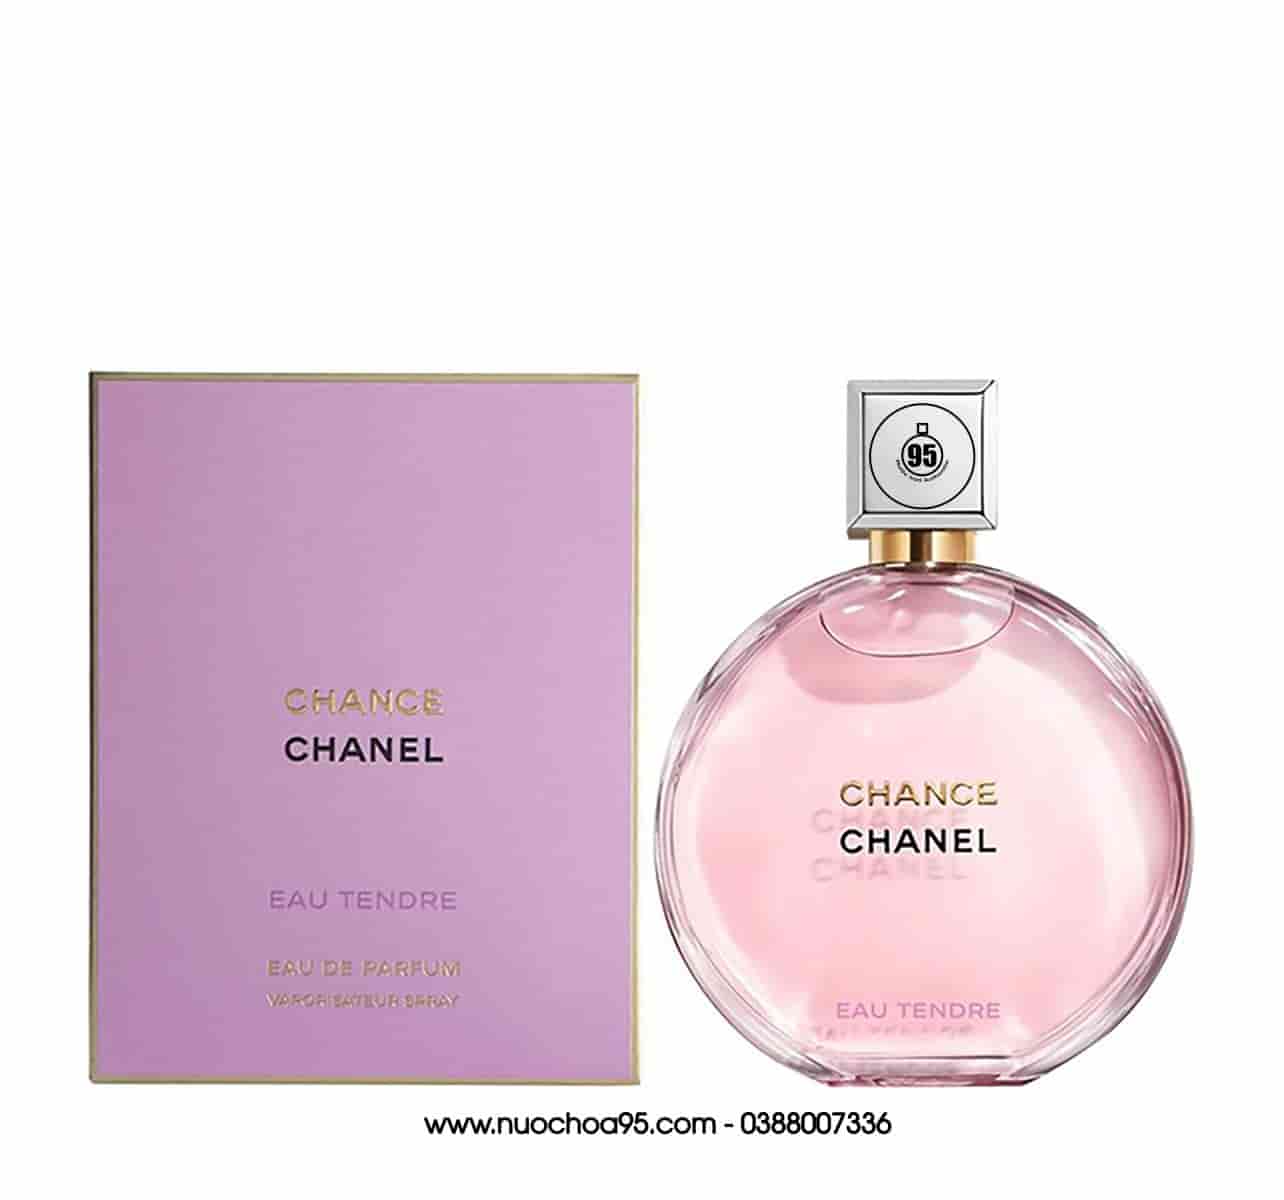 Actualizar 40+ imagen chanel chance eau tendre perfume notes